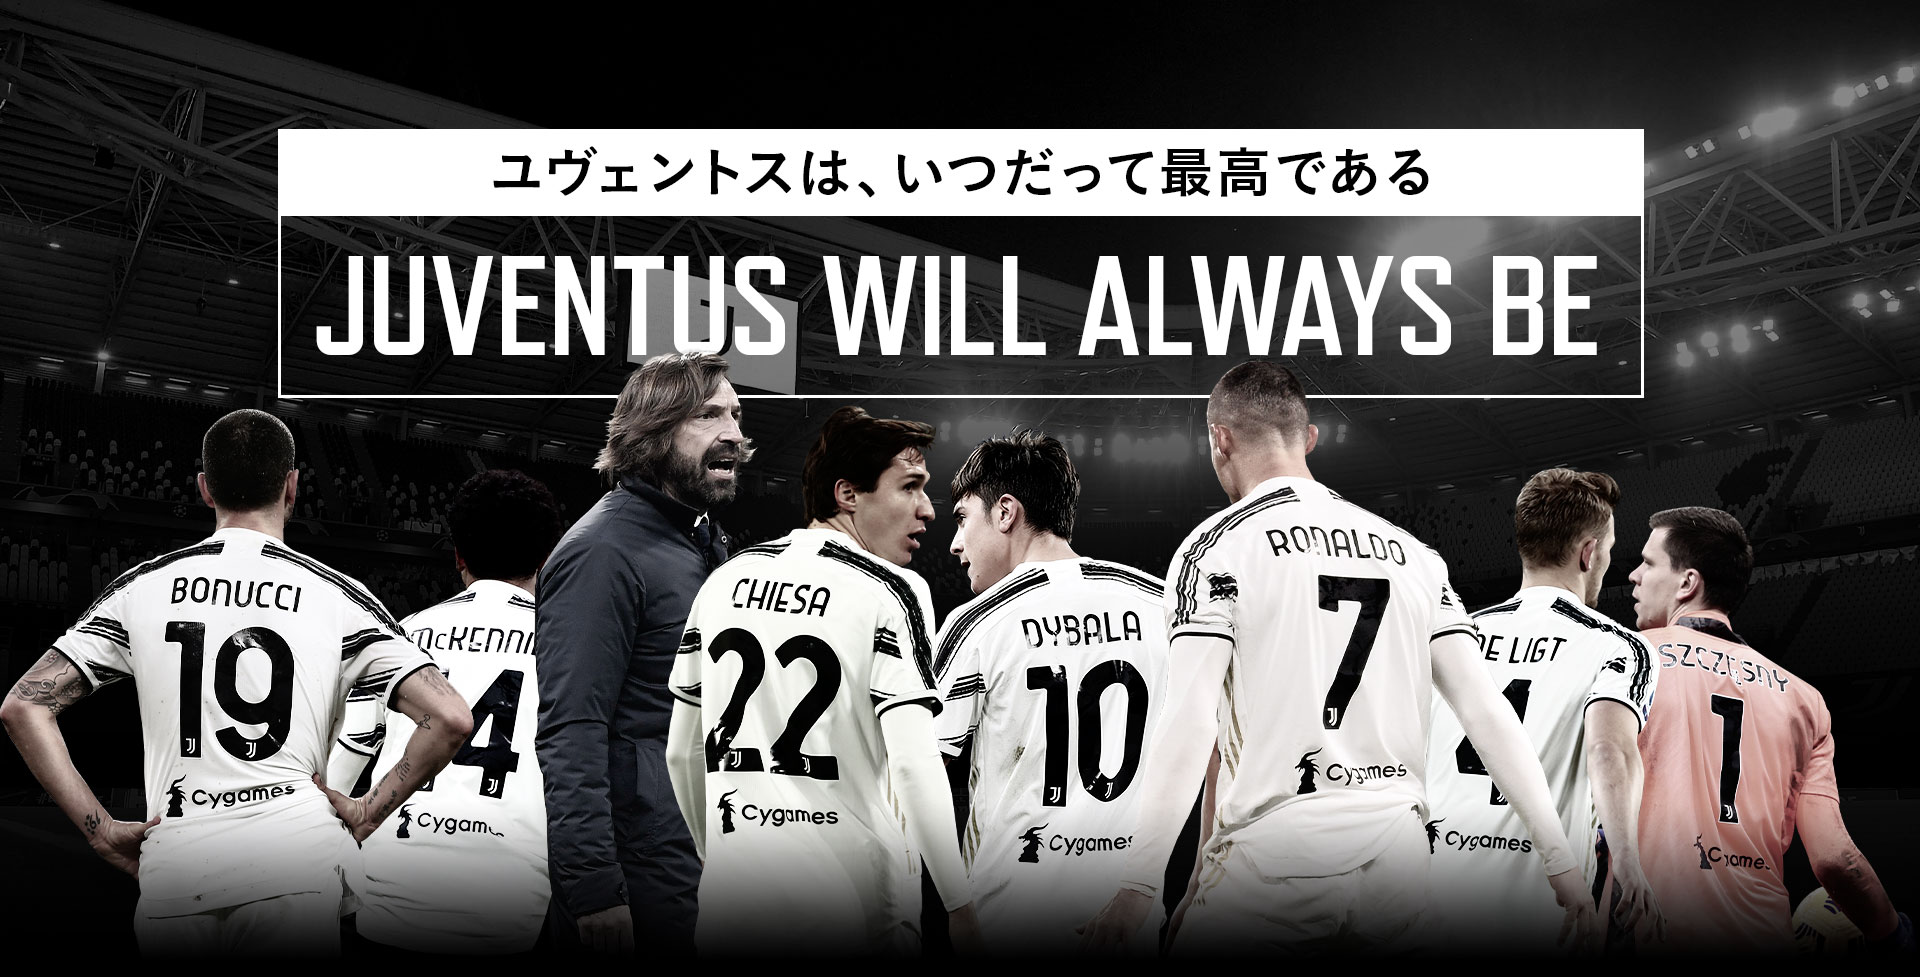 Juventus Will Always Be ユヴェントスは いつだって最高である サッカーキング